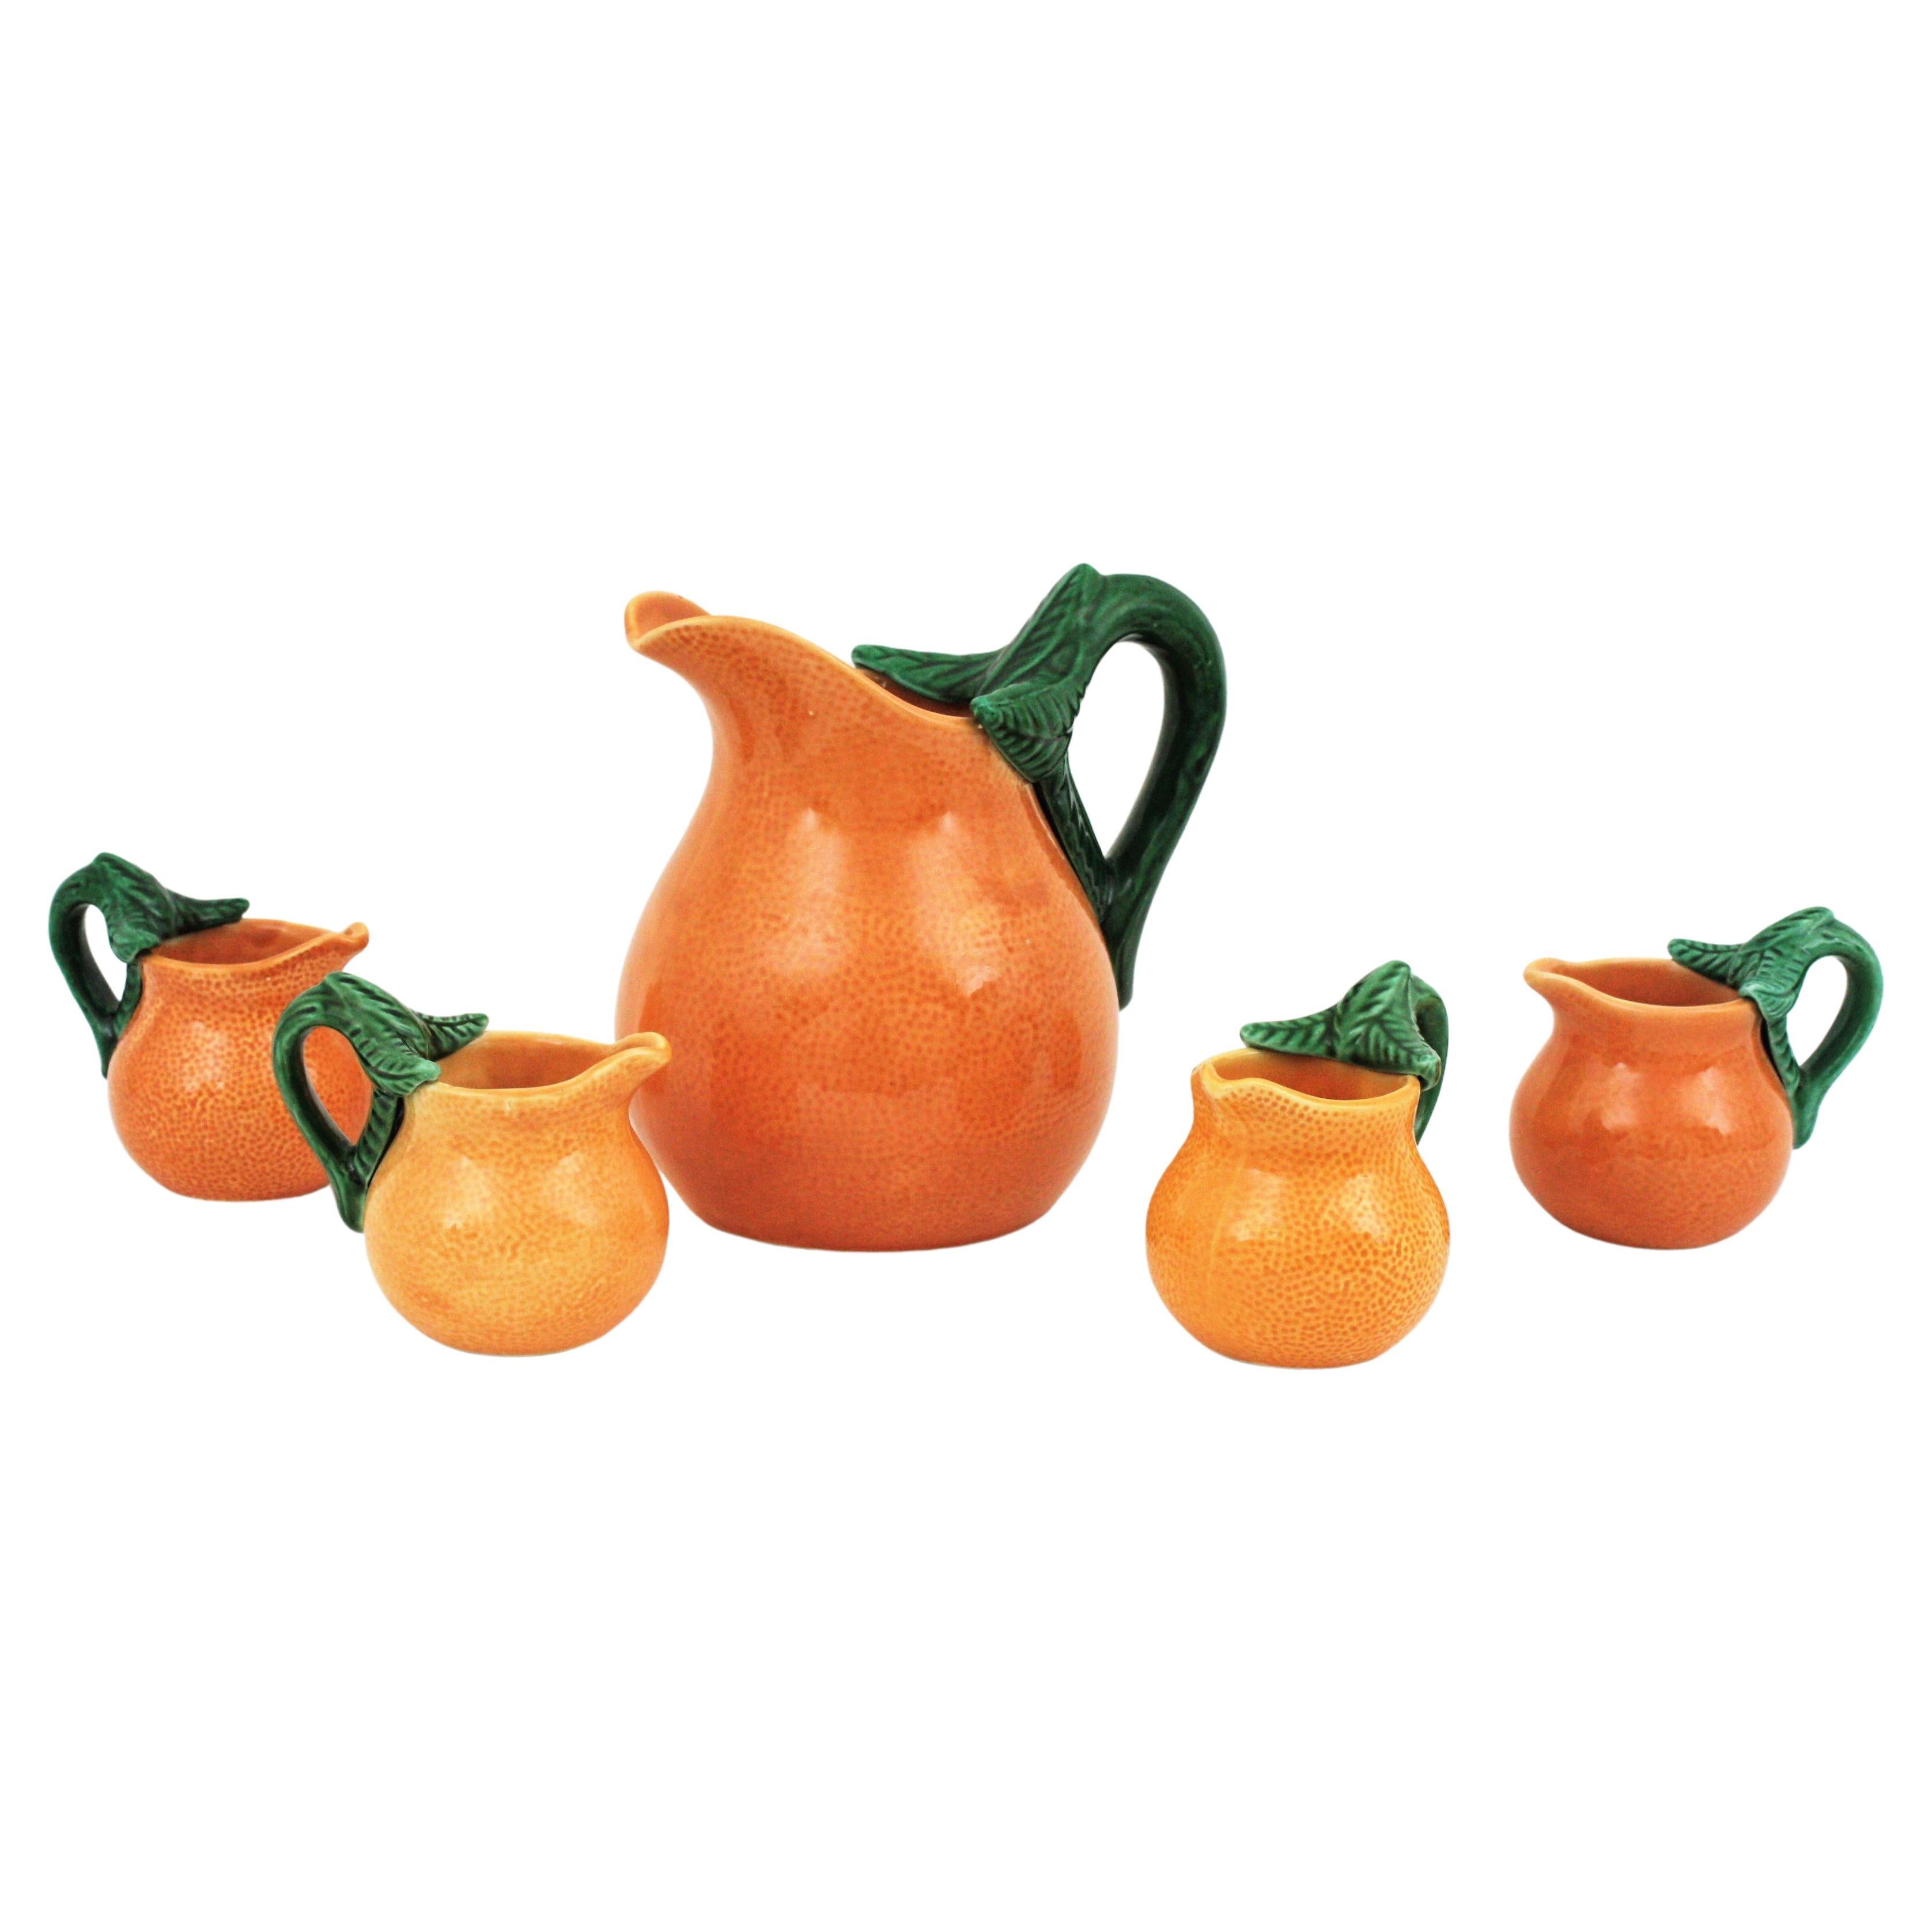 Orange glasierte Keramik Majolika Kaffee oder Tee Set für vier Personen